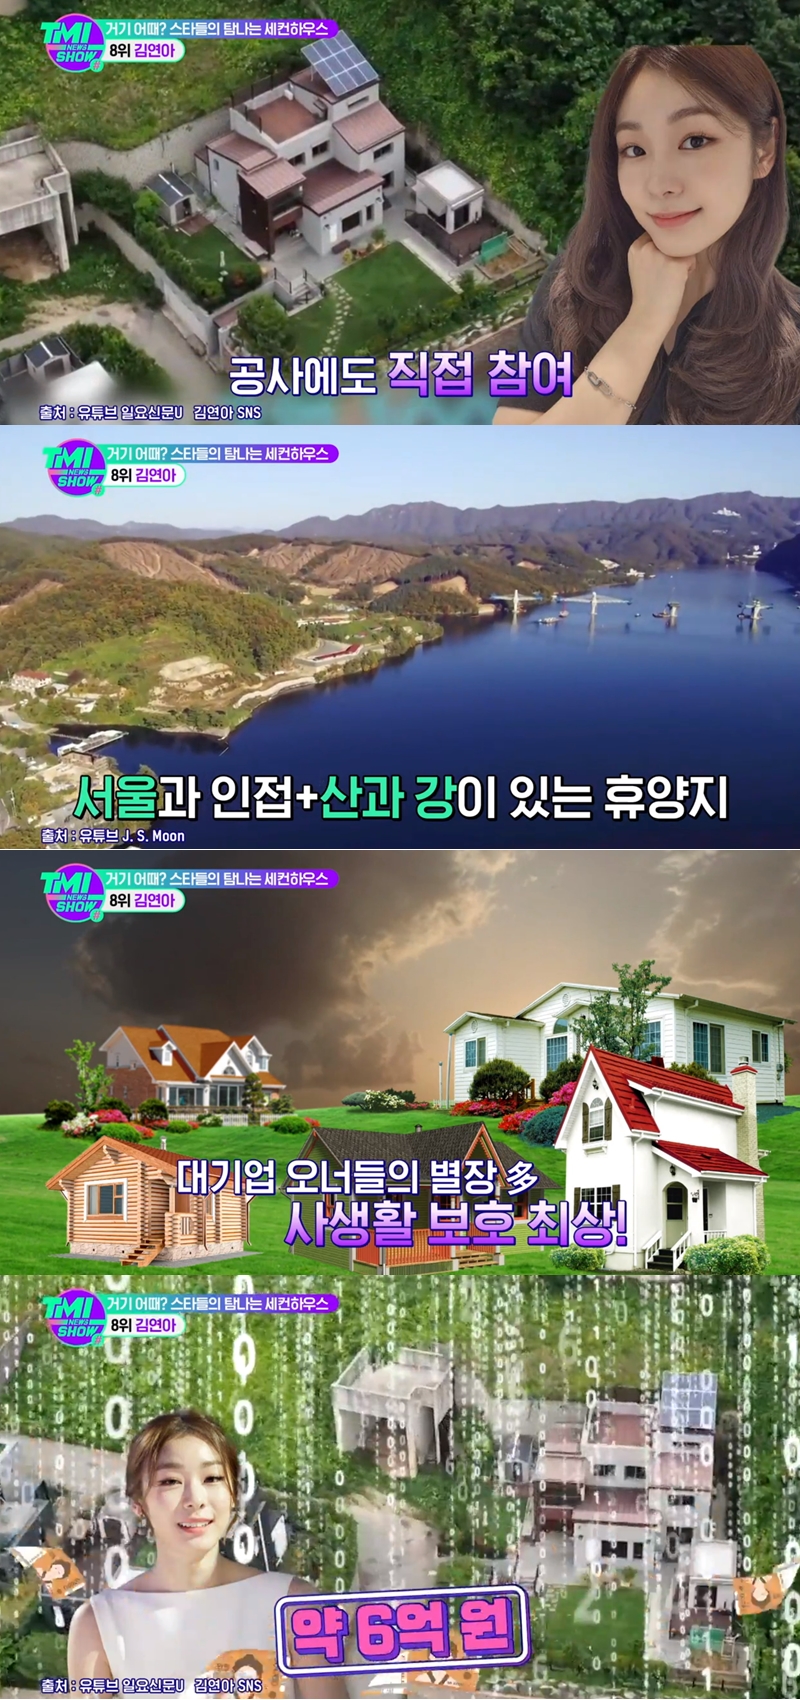 ▲ 출처| Mnet 'TMI NEWS SHOW' 영상 캡처